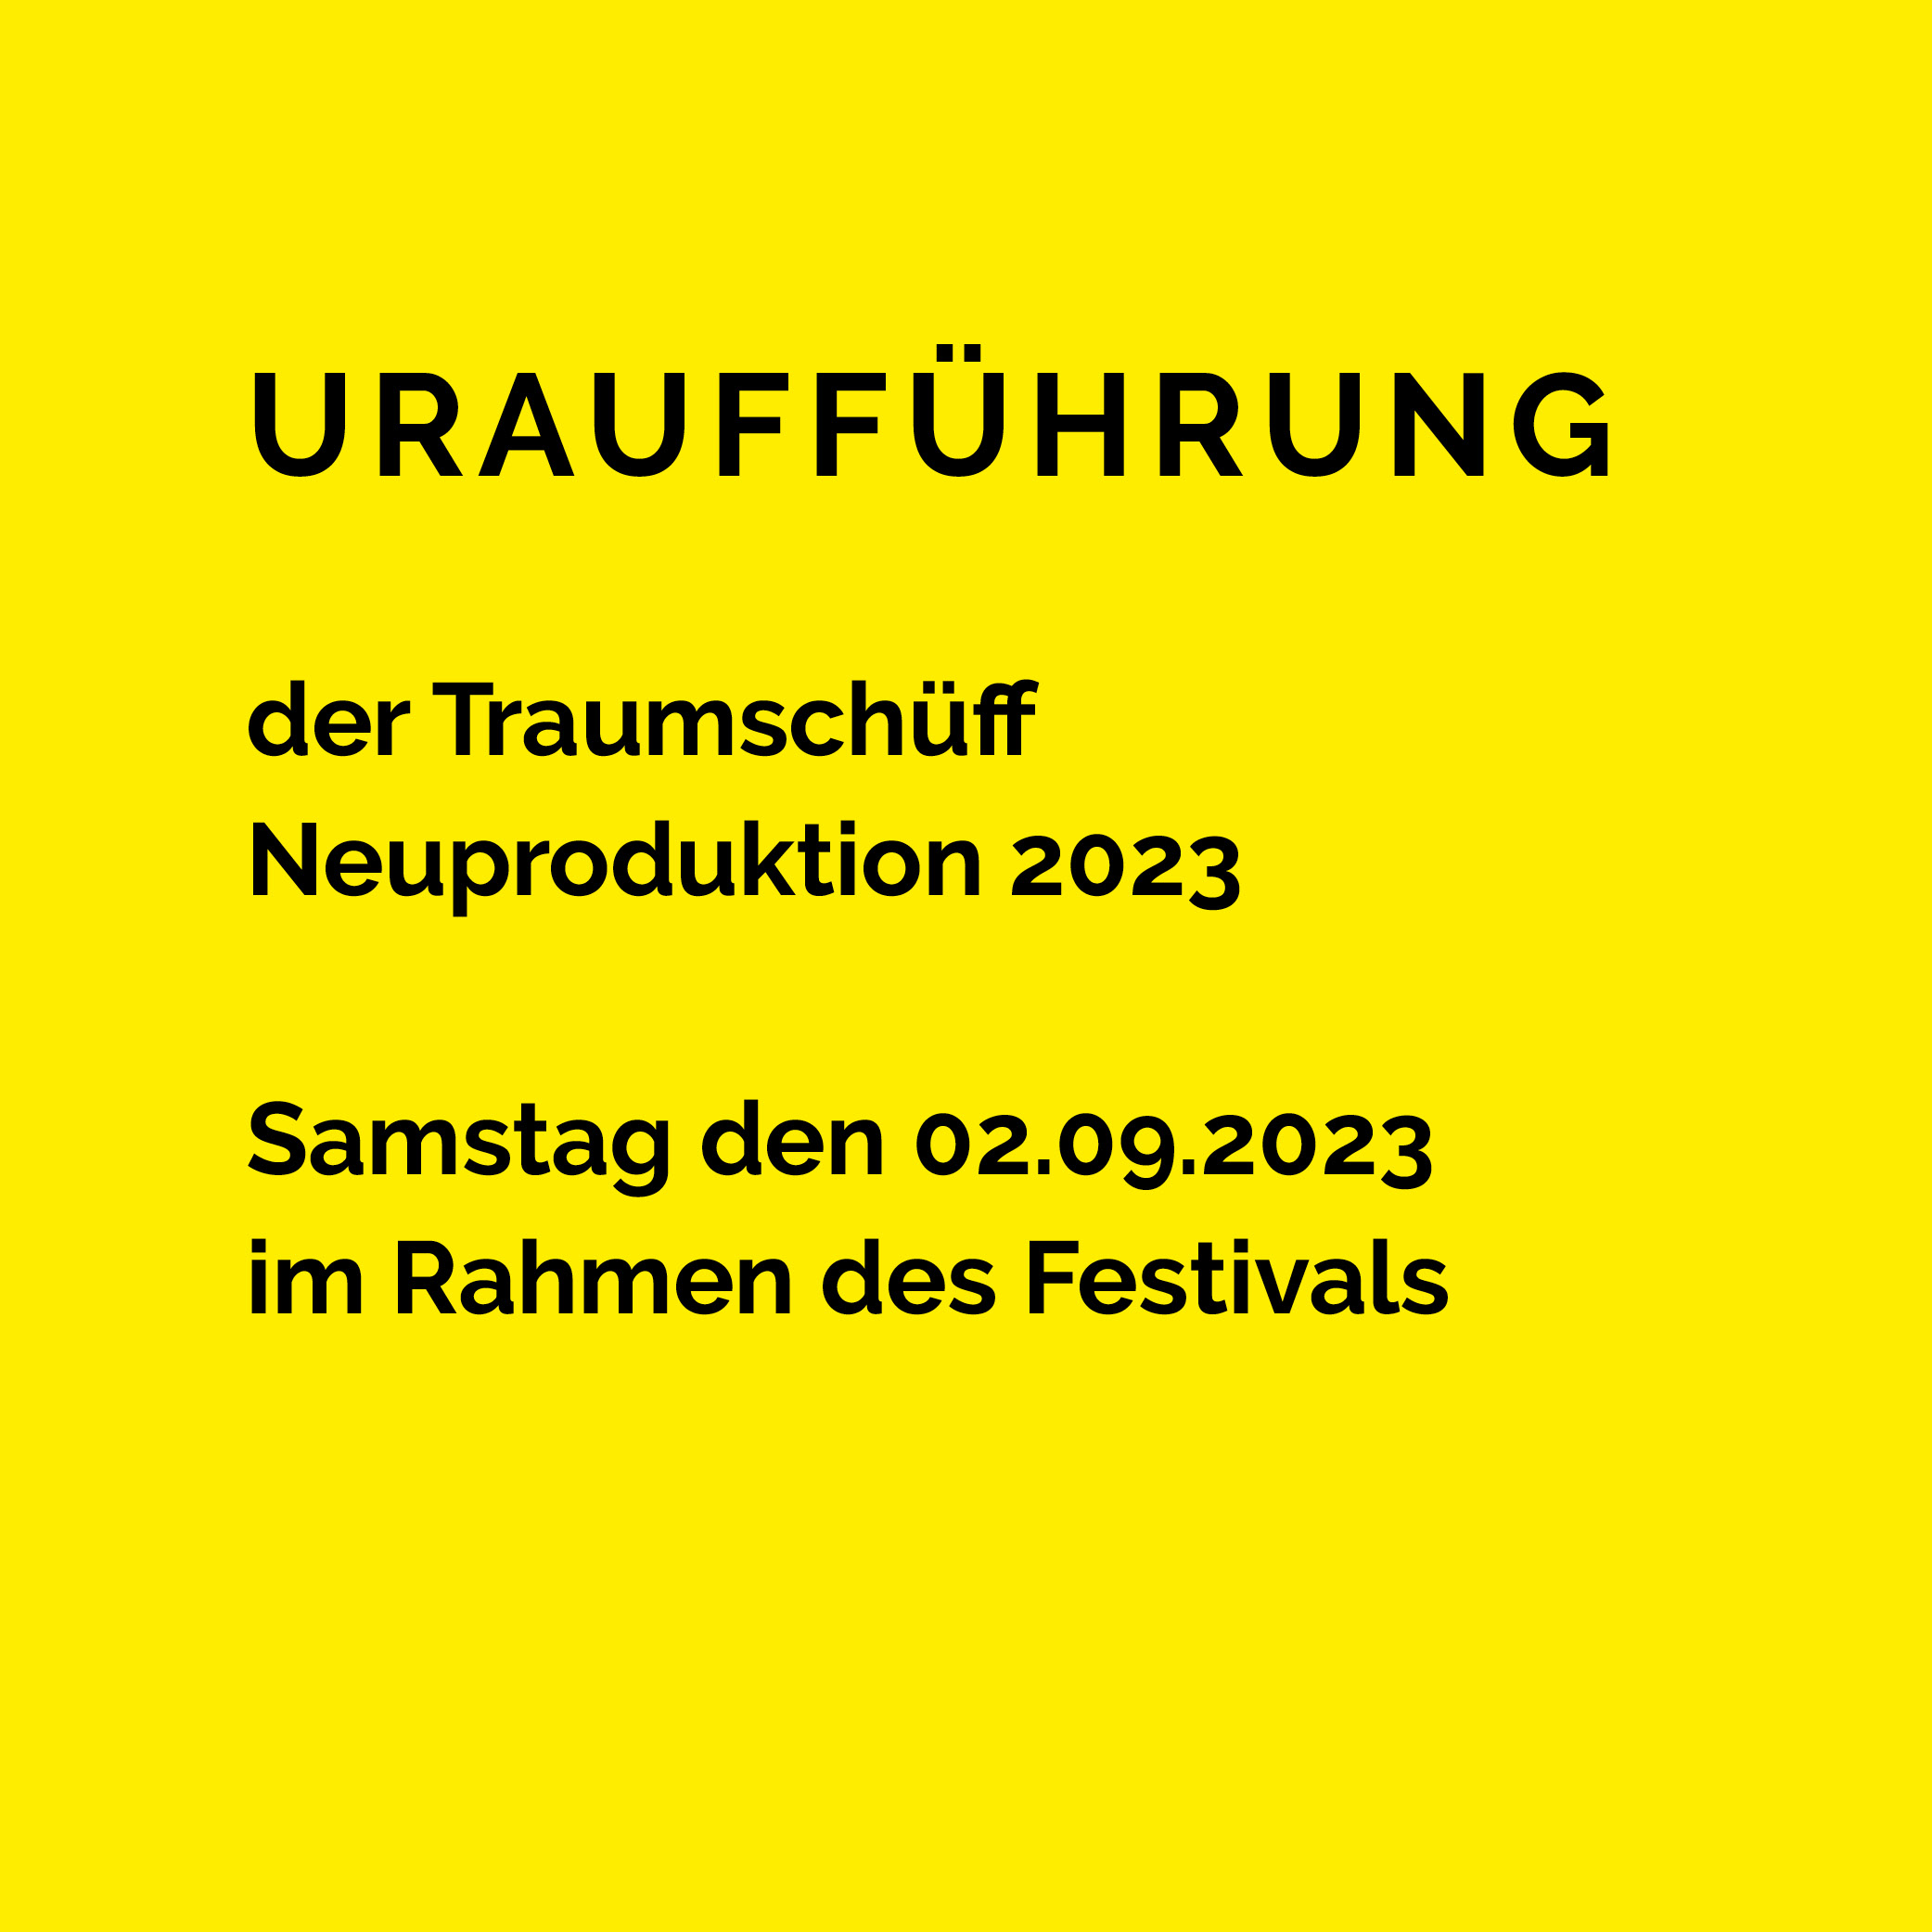 Traumschueff Kunstfestival traeumweiter2023 DieBuergermeisterschaft 2